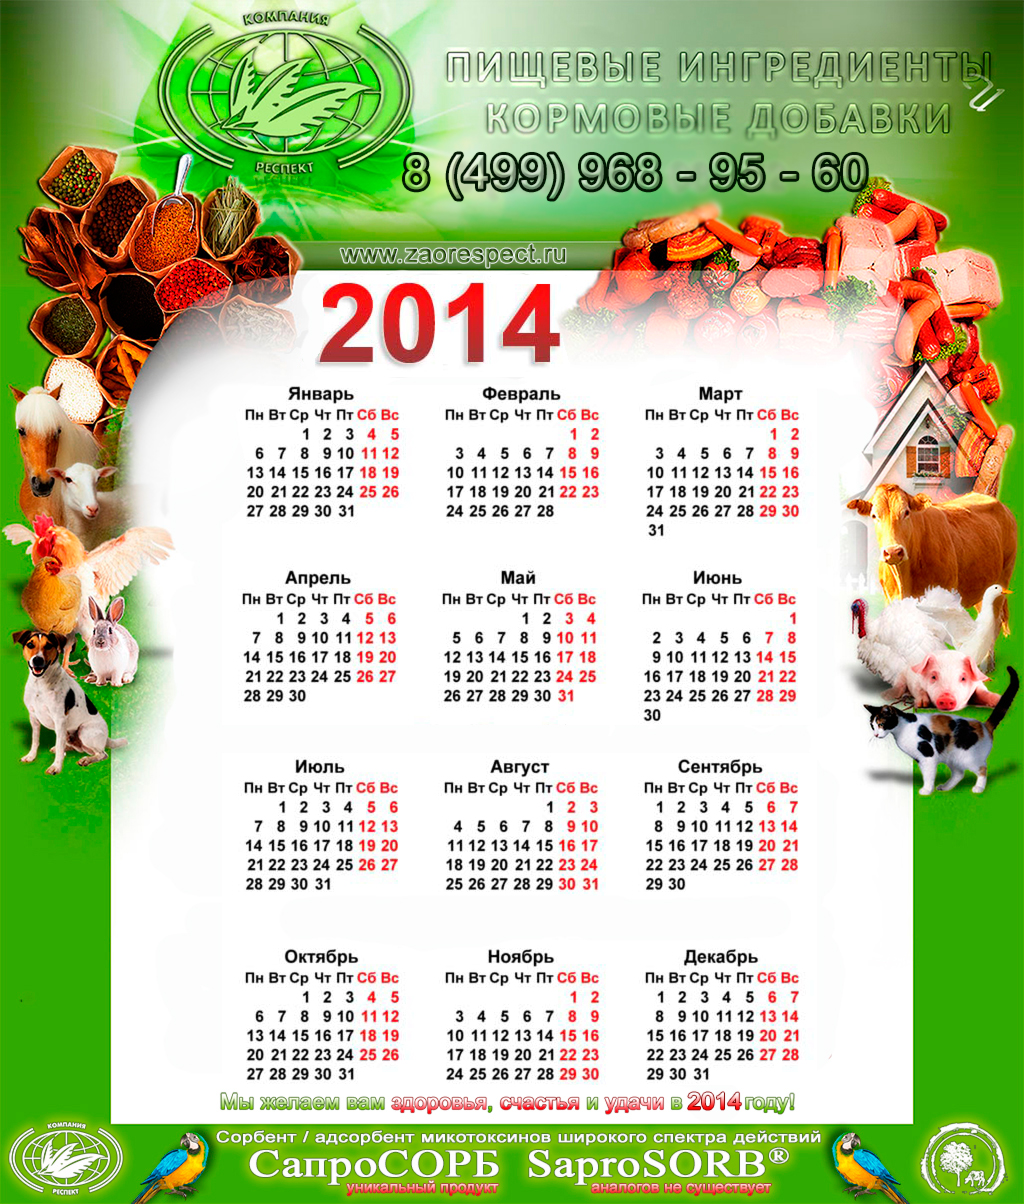 Календарь 2014 ЗАО РЕСПЕКТ, Кормовые добавки, Пищевые Ингредиенты, Сапросорб, животноводство